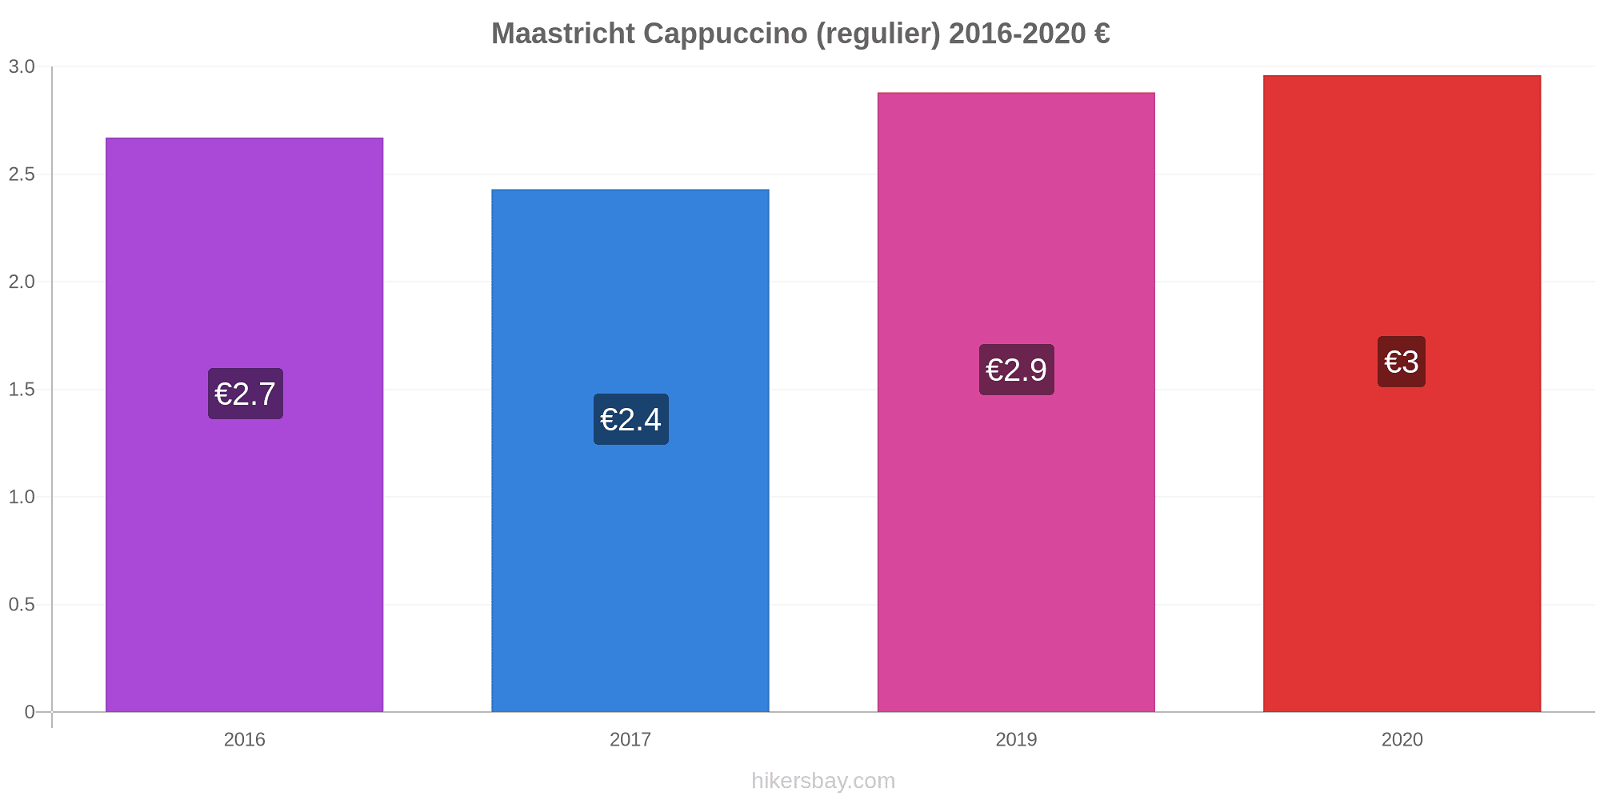 Maastricht prijswijzigingen Cappuccino (regelmatige) hikersbay.com